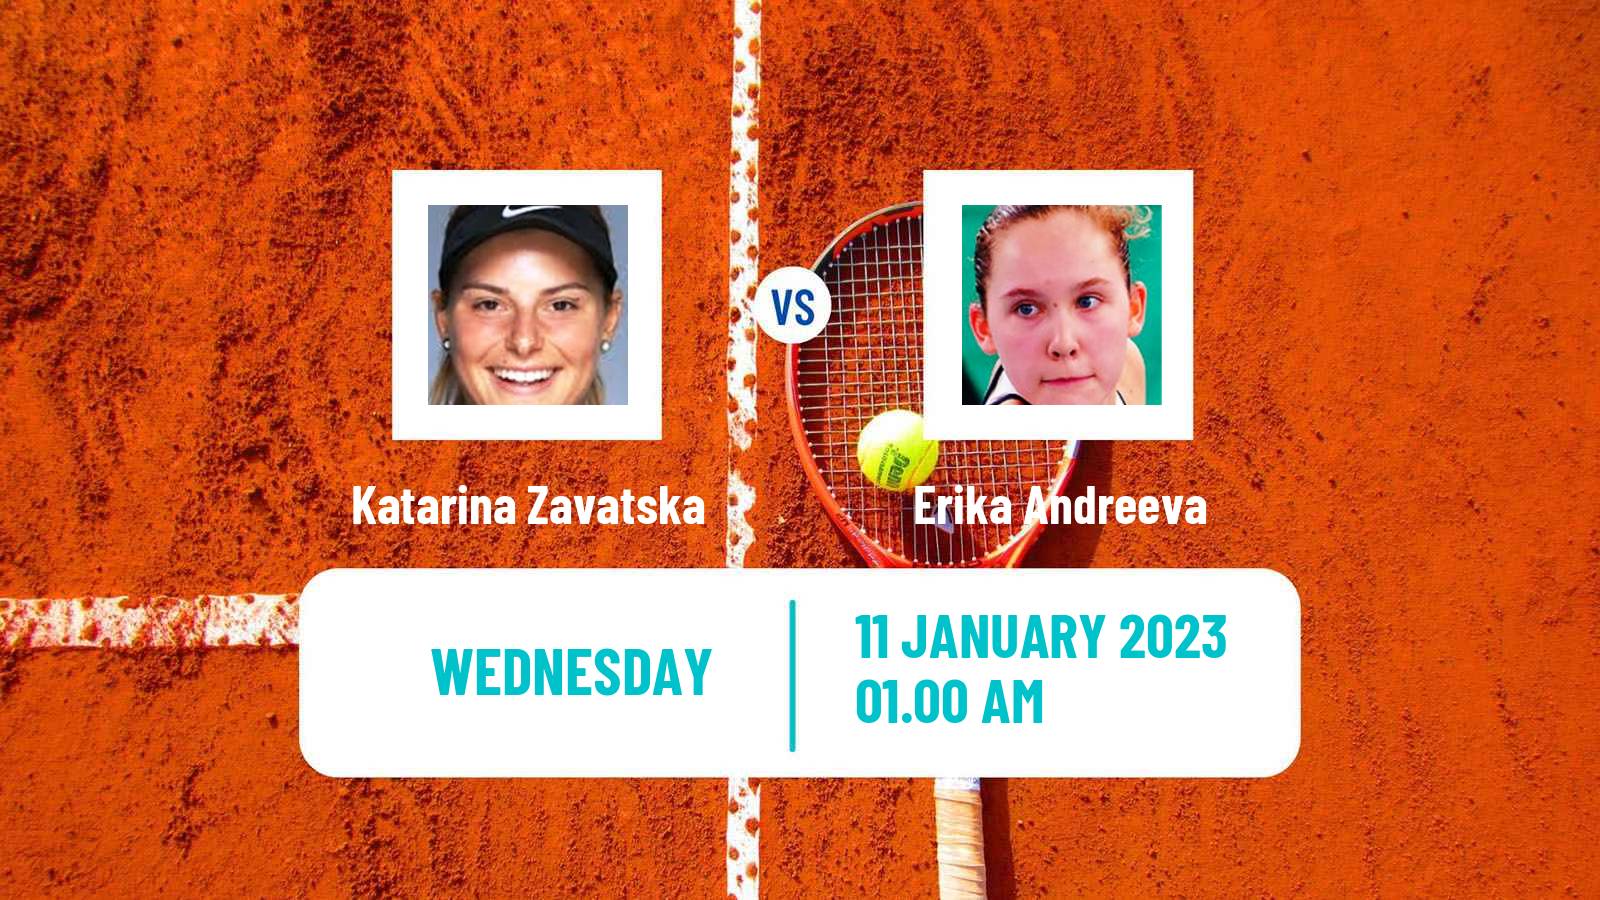 Tennis WTA Australian Open Katarina Zavatska - Erika Andreeva